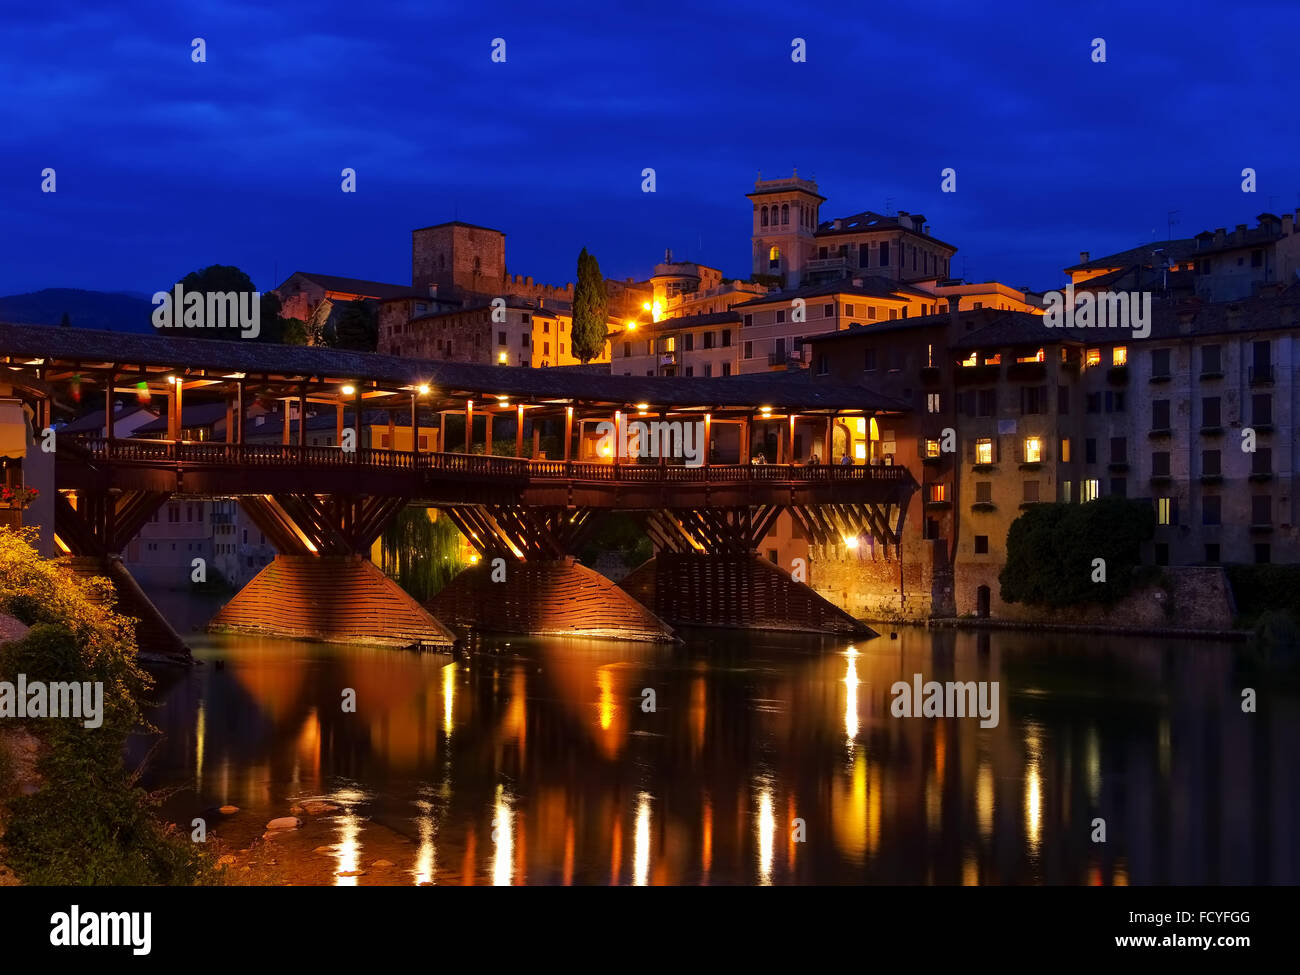 Bassano del Grappa, Ponte Vecchio am Abend - Bassano del Grappa, Ponte Vecchio por la noche en el norte de Italia Foto de stock